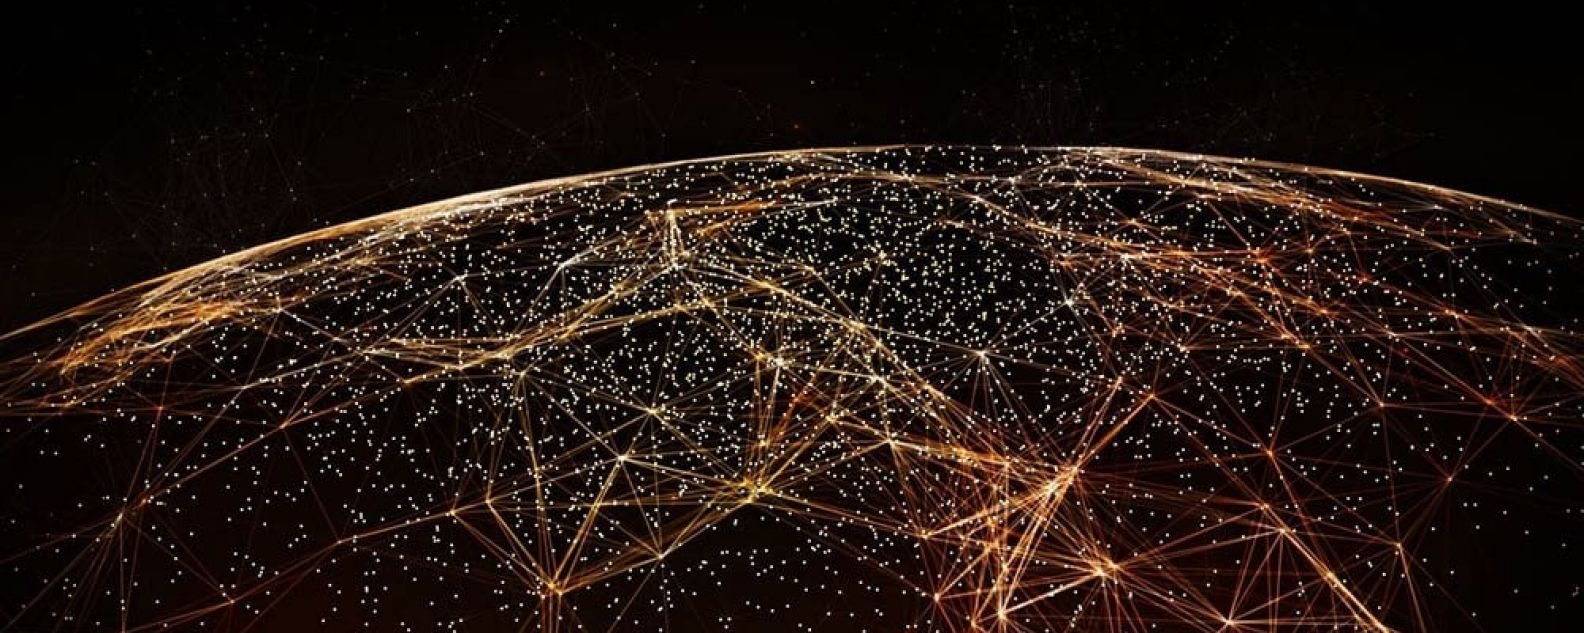 Resumo do mundo com redes vinculadas